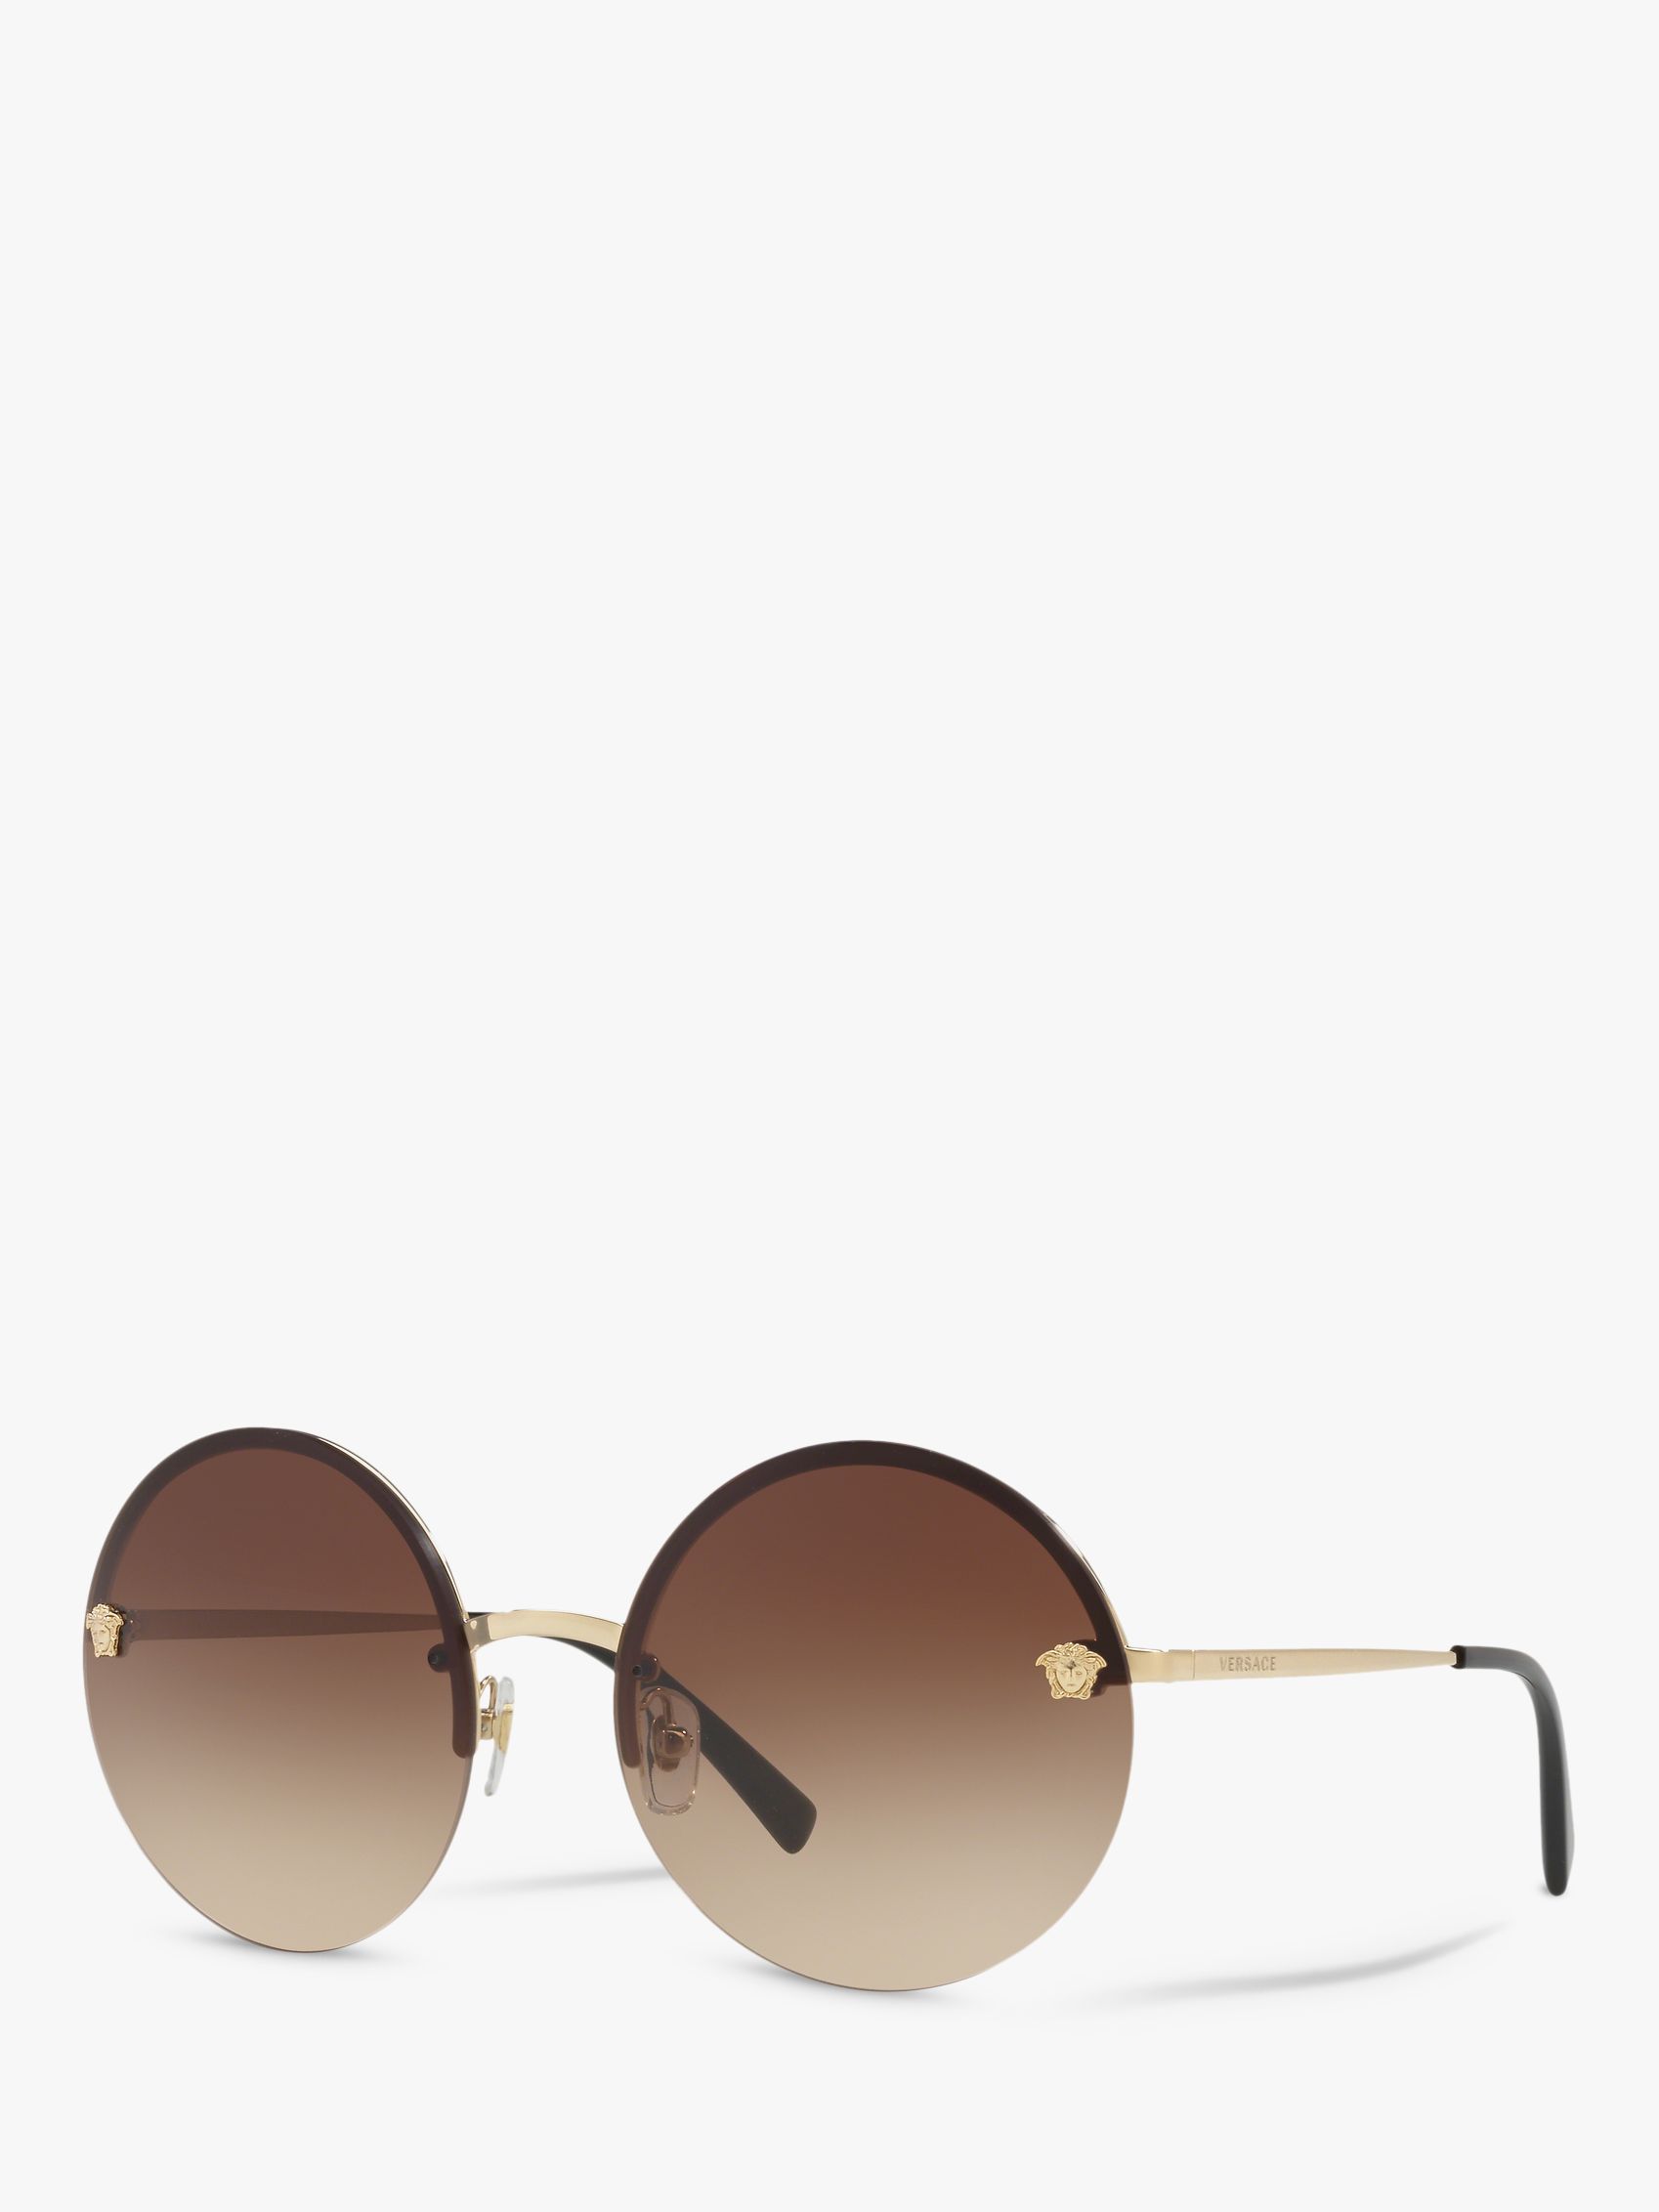 Versace VE2176 Women's Round Sunglasses